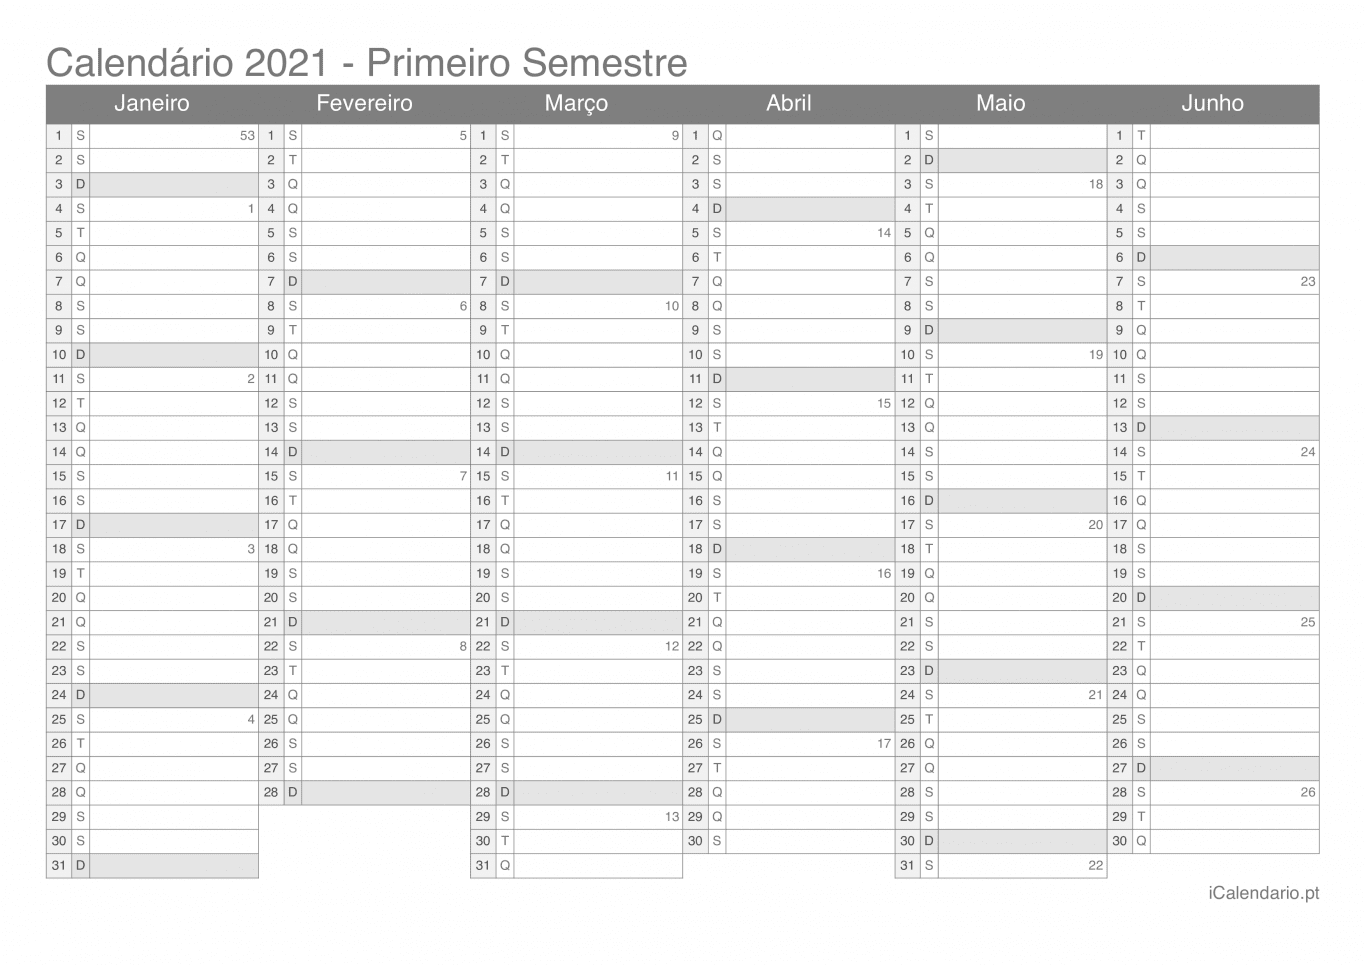 Calendário por semestre com números da semana 2021